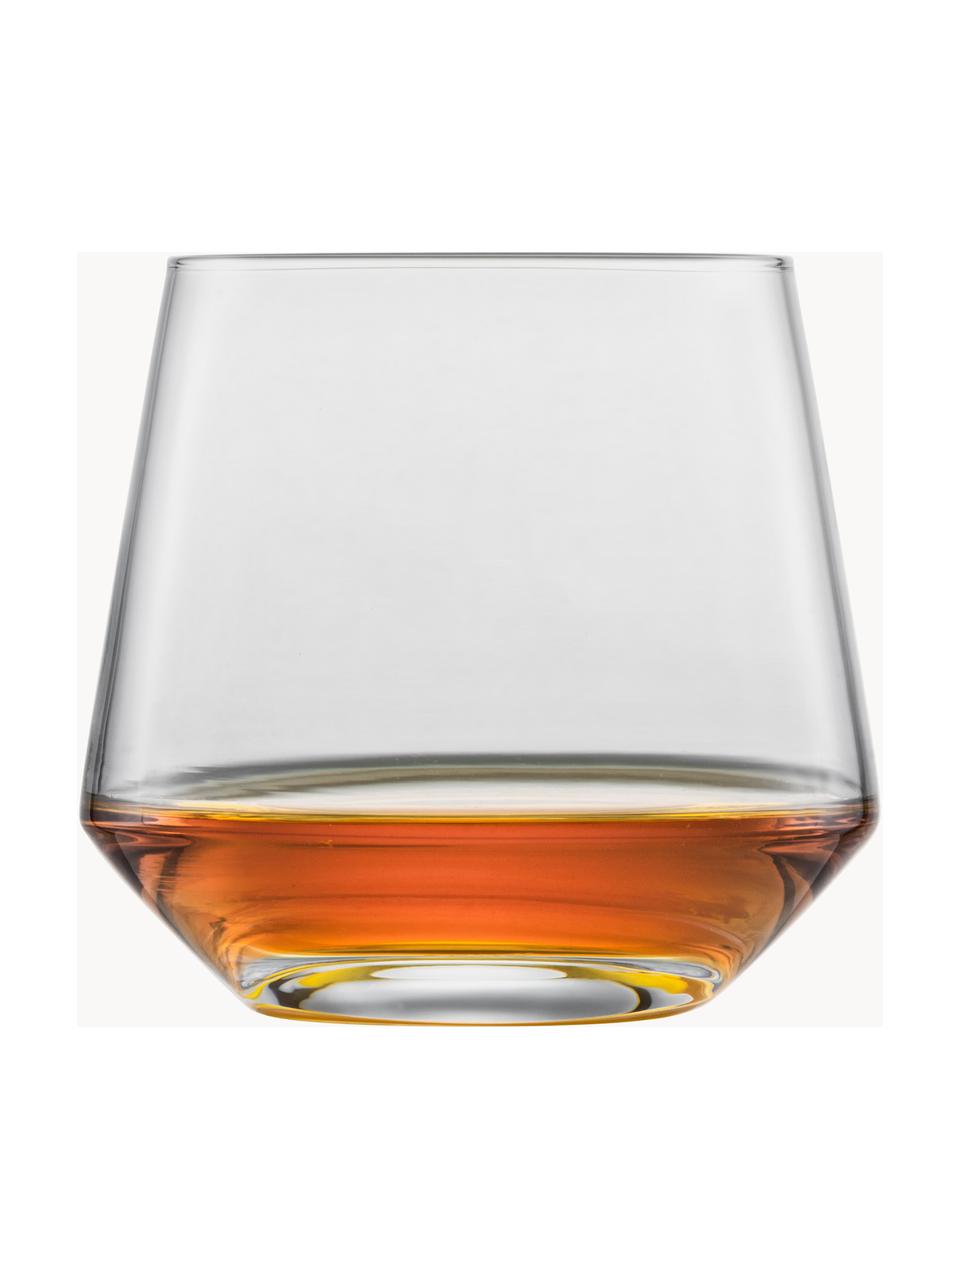 Kristall-Whiskygläser Pure, 4 Stück, Tritan-Kristallglas, Transparent, Ø 10 x H 9 cm, 380 ml